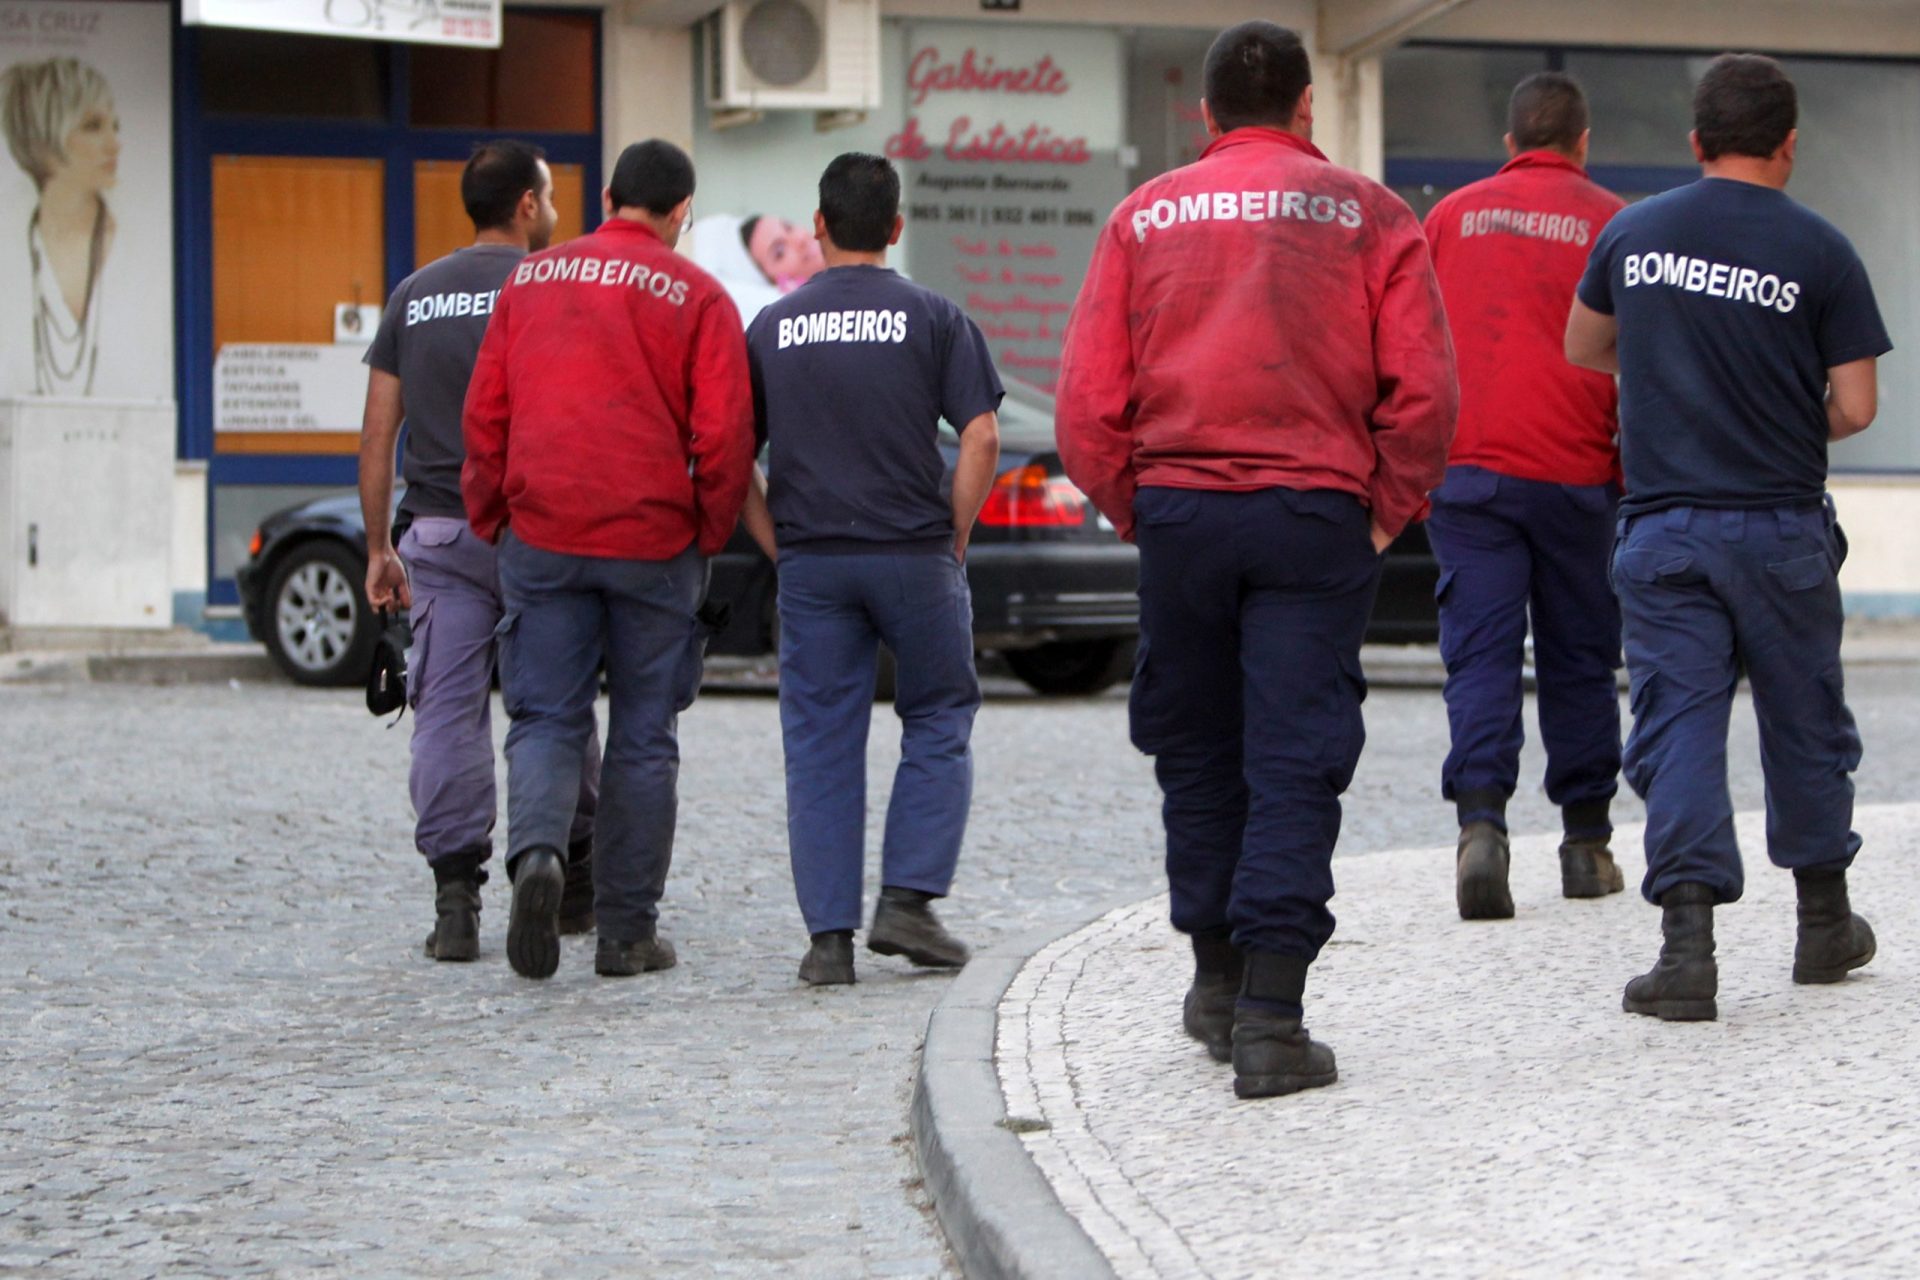 Bombeiros portugueses recebem instruções sobre como atuar perante casos de coronavírus